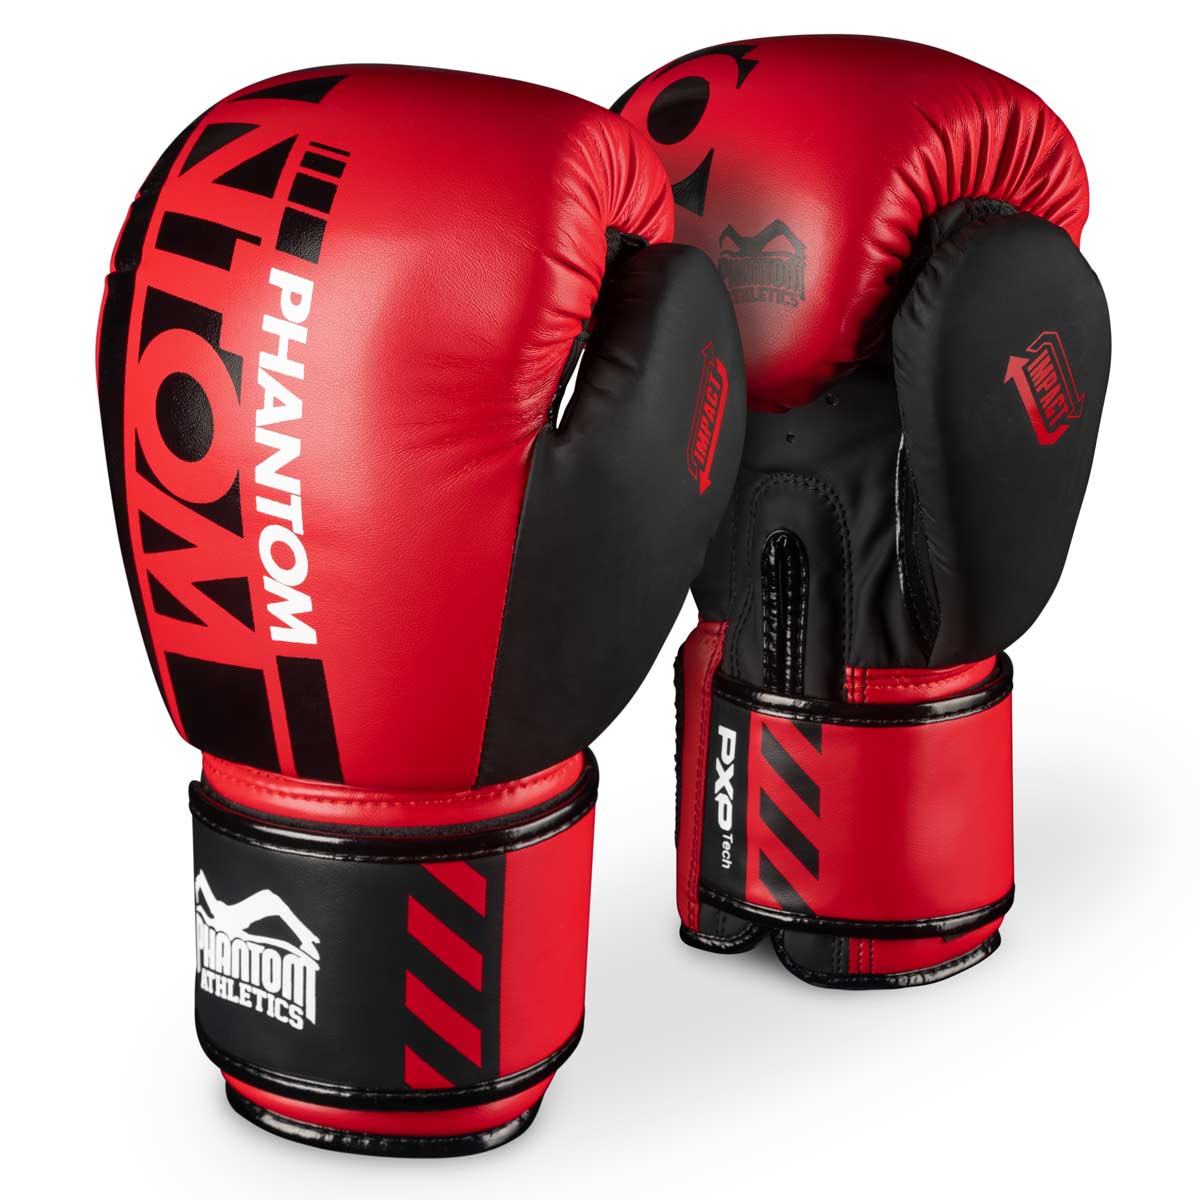 Phantom boksarske rokavice APEX v omejeni RDEČI izdaji. Popolne rokavice za vaš trening borilnih veščin, kot so MMA, tajski boks, tajski boks, K1 ali boks.